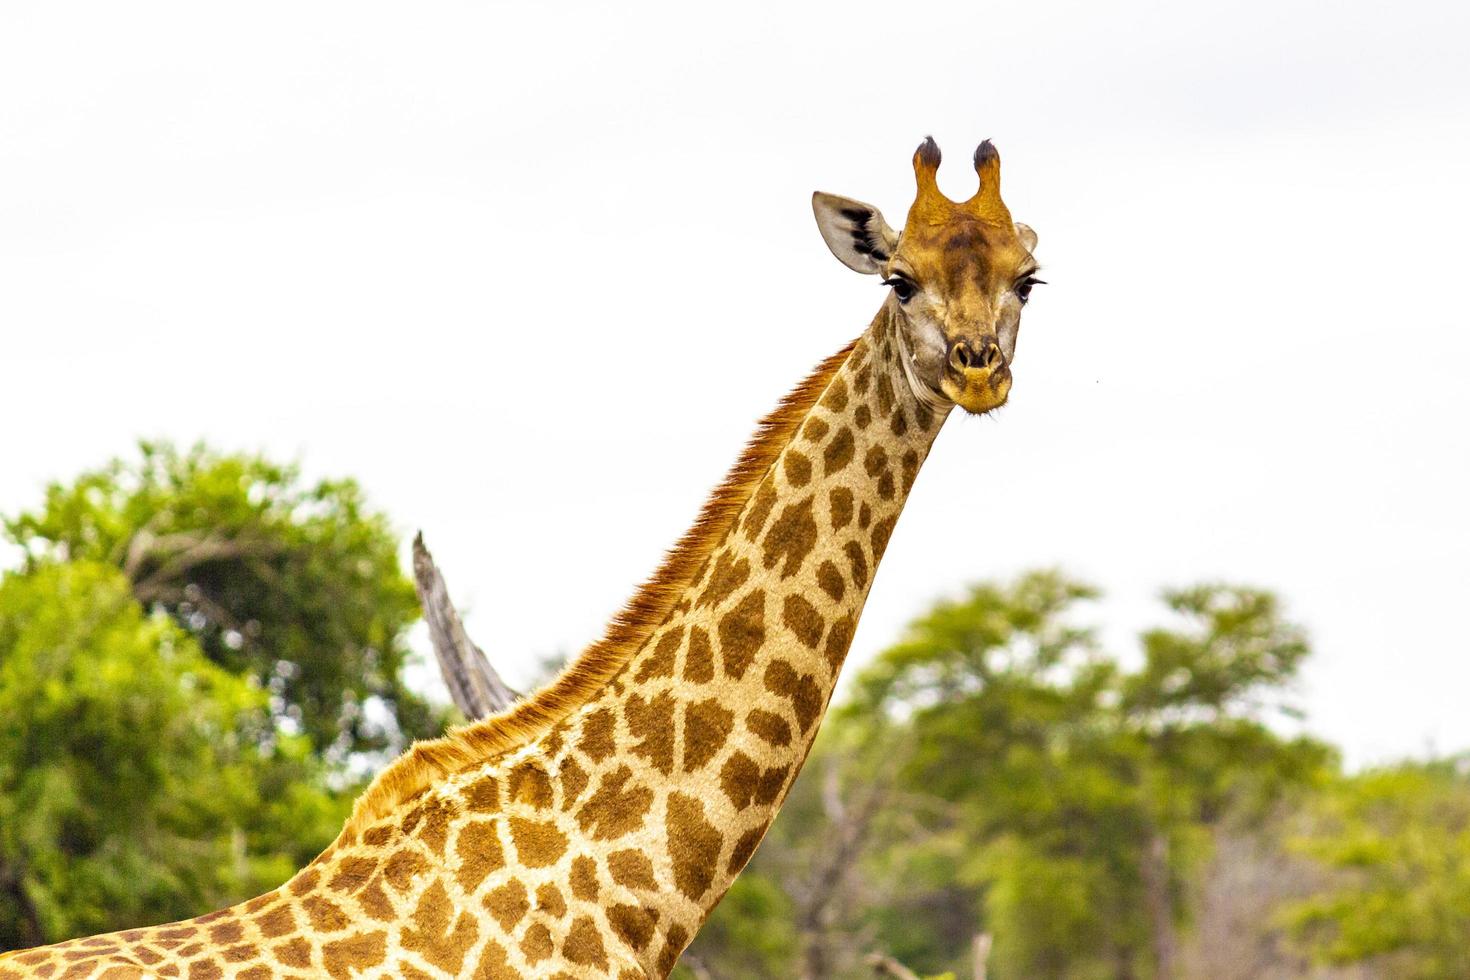 bella alta maestosa giraffa parco nazionale Kruger safari sud africa. foto